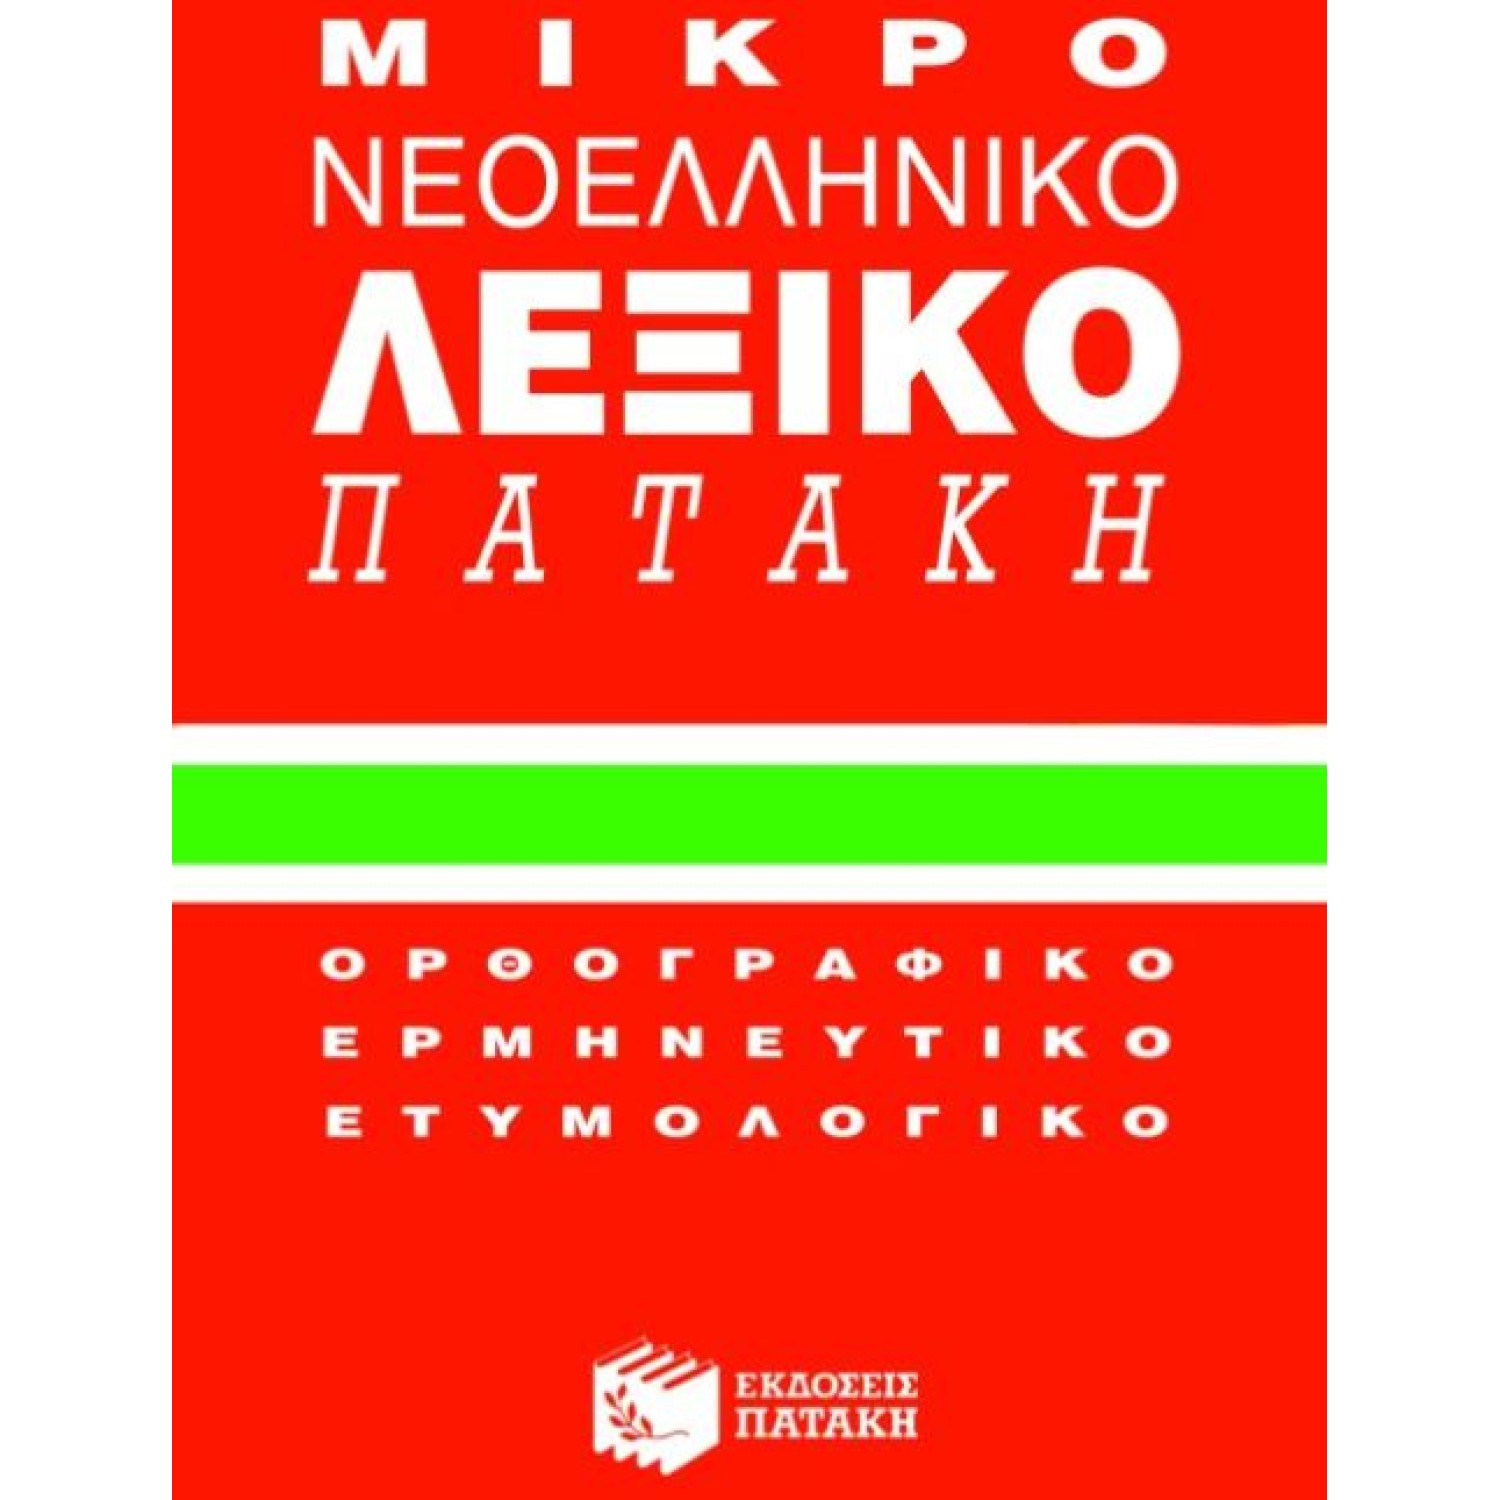 Μικρό νεοελληνικό λεξικό Πατάκη Ορθογραφικό, ερμηνευτικό, ετυμολογικό